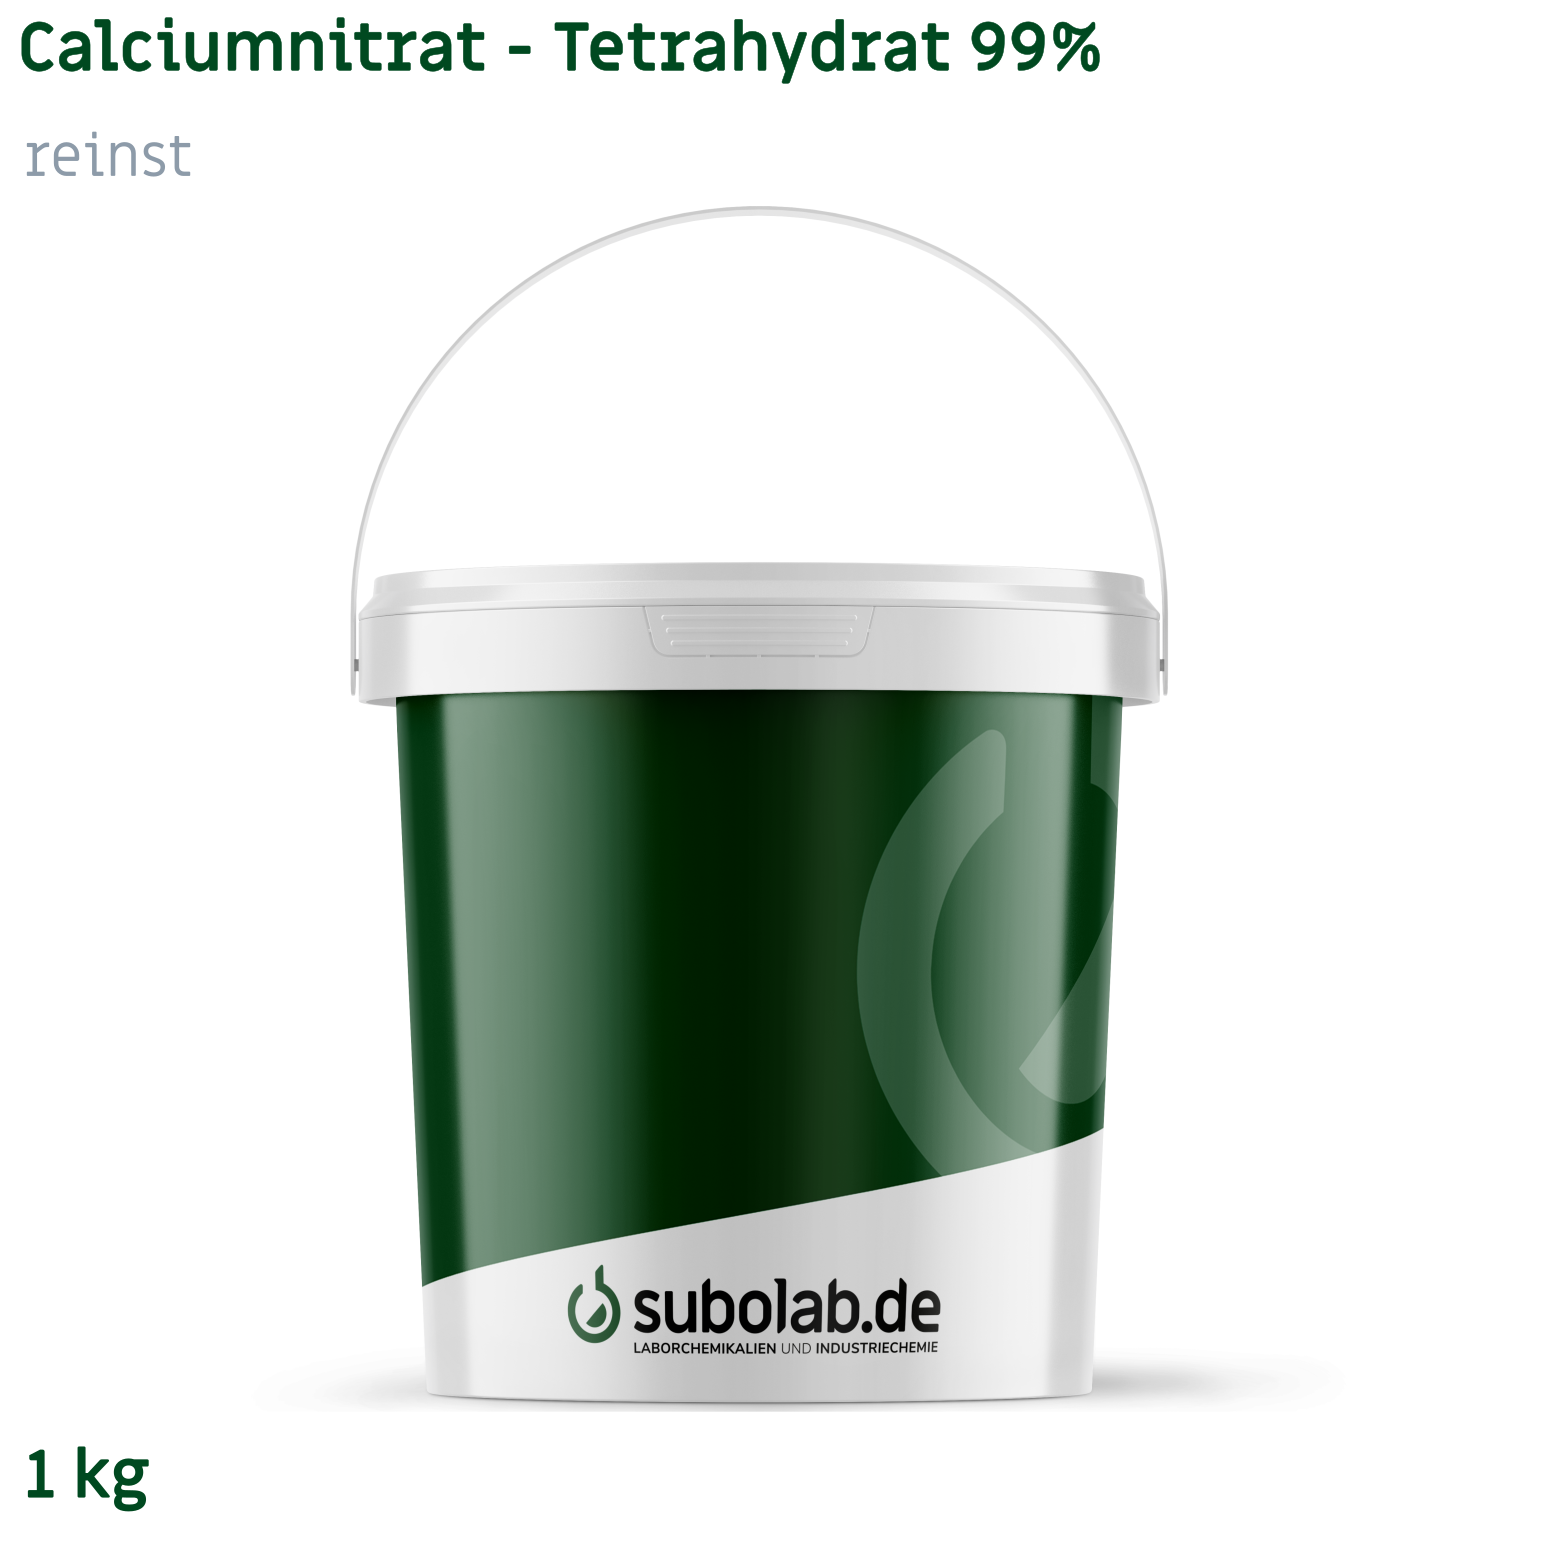 Bild von Calciumnitrat - Tetrahydrat 99% reinst (1 kg)